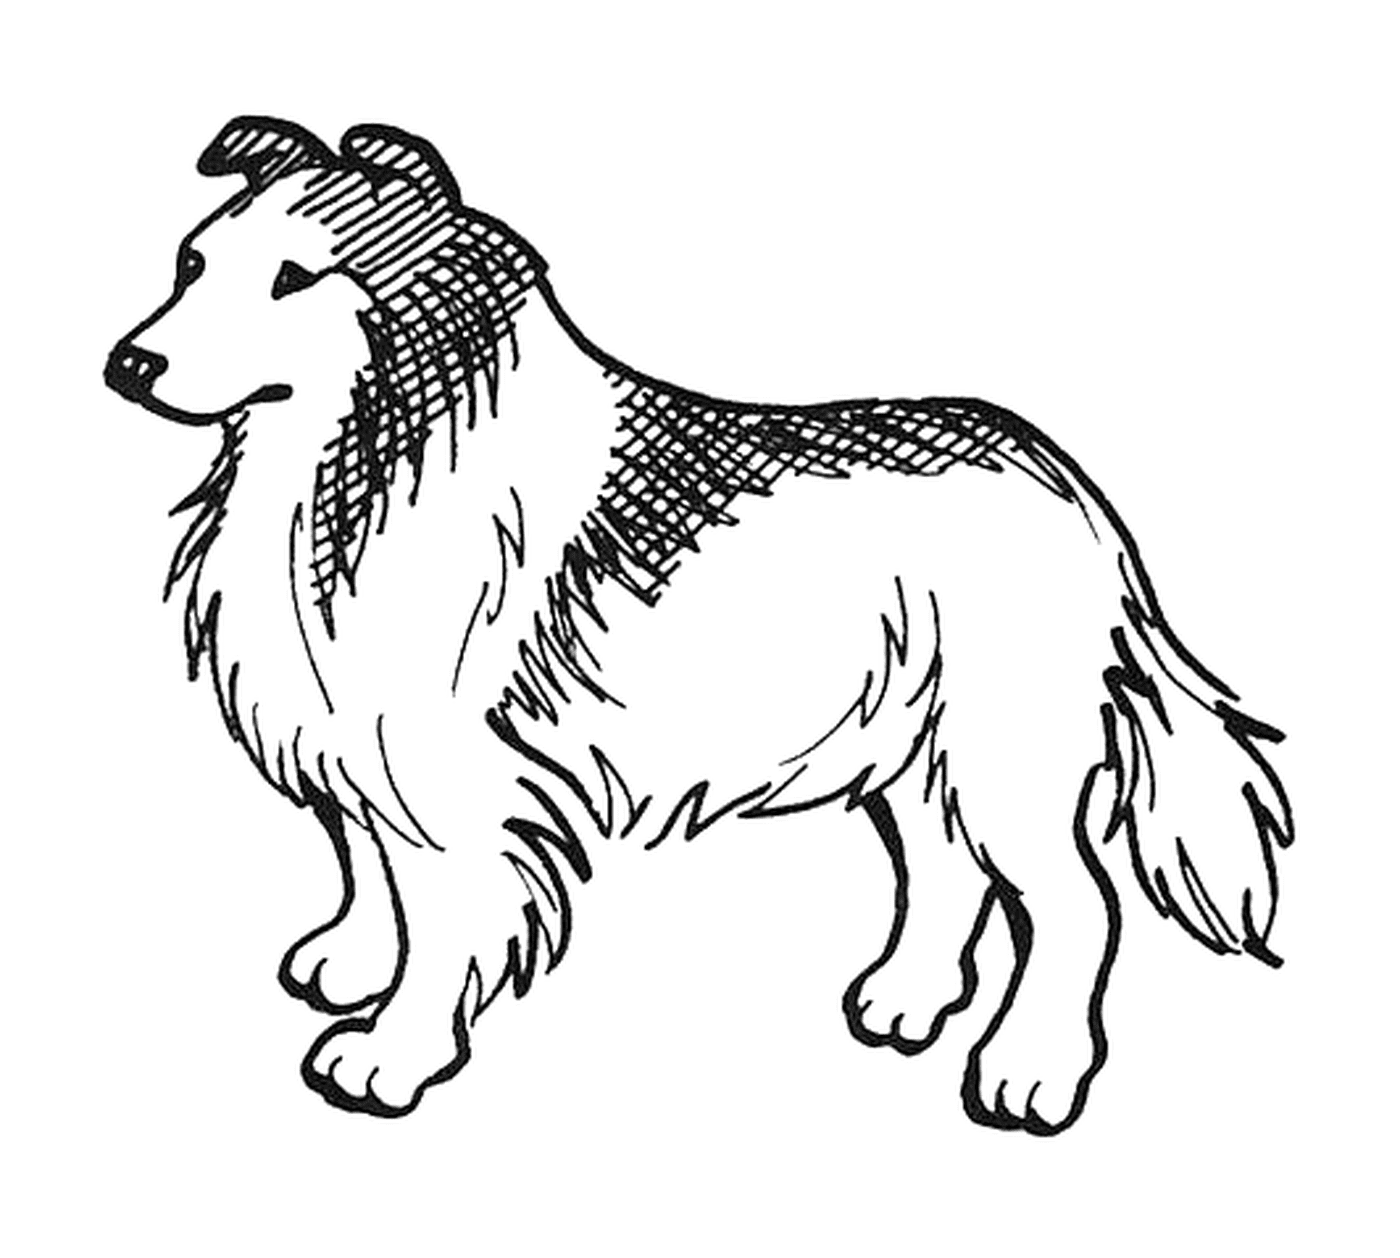  A Lassie breed dog 